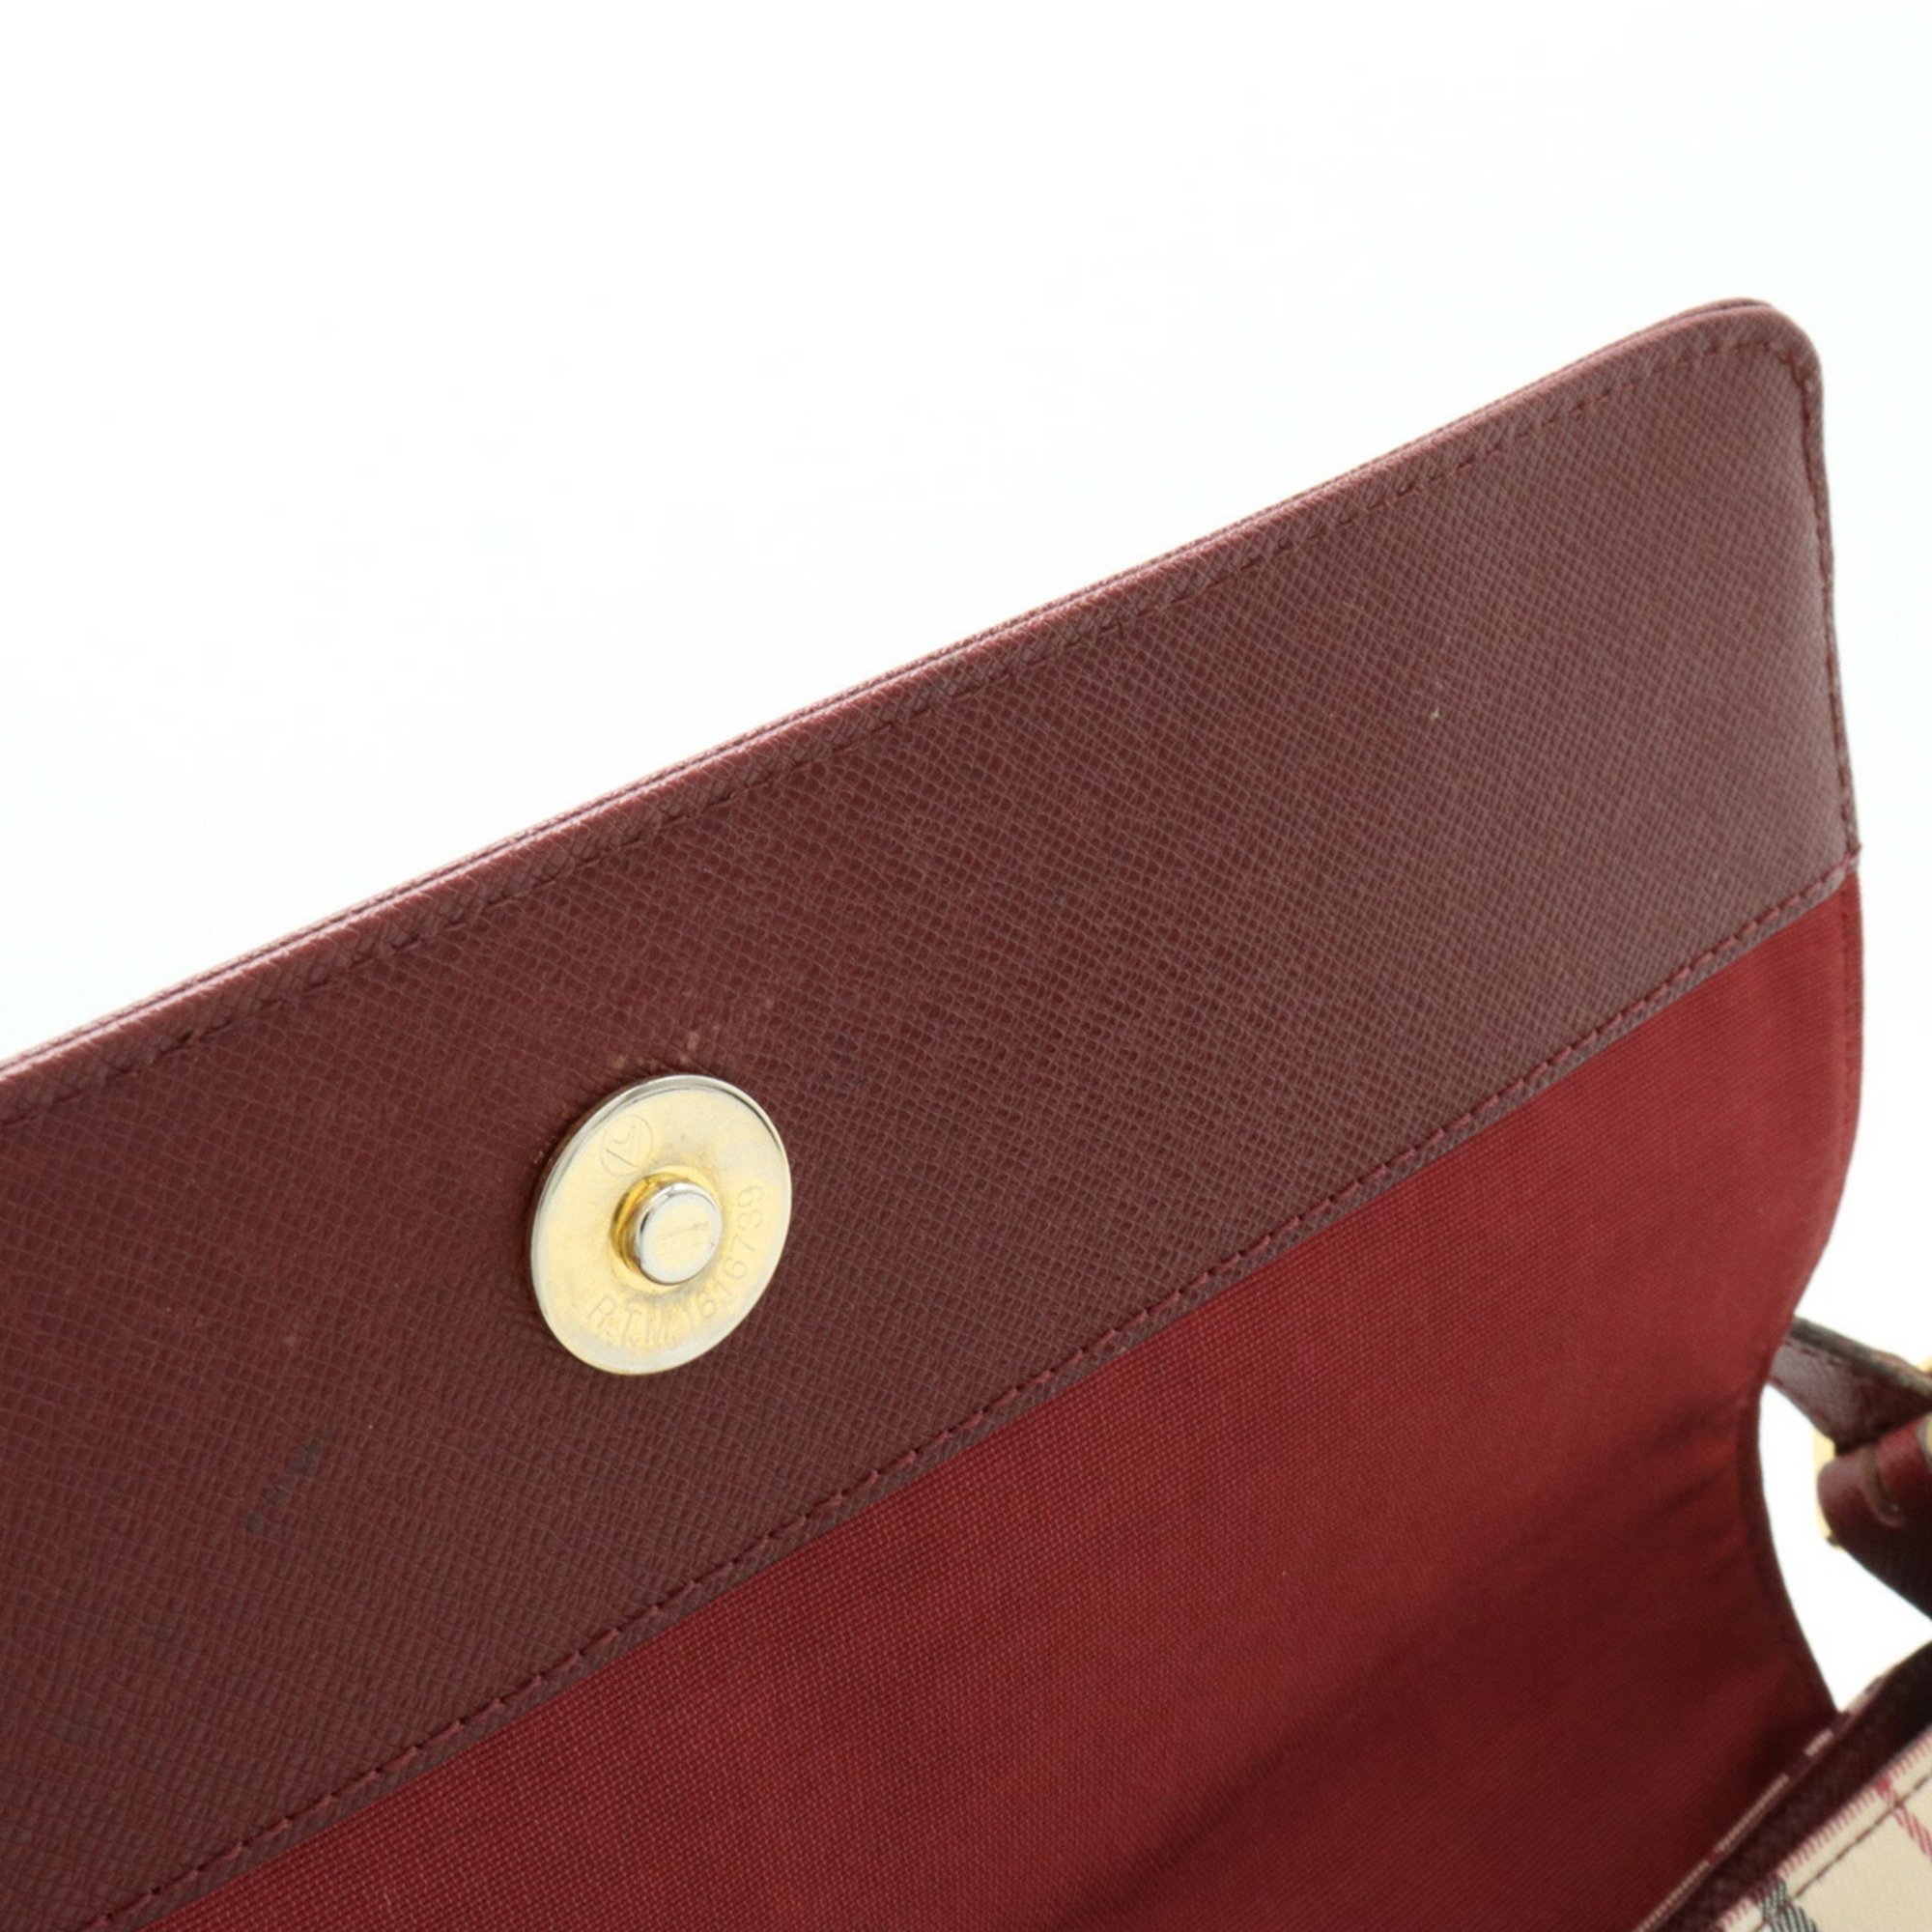 BURBERRY Nova Check Shoulder Bag Canvas Leather Beige Bordeaux